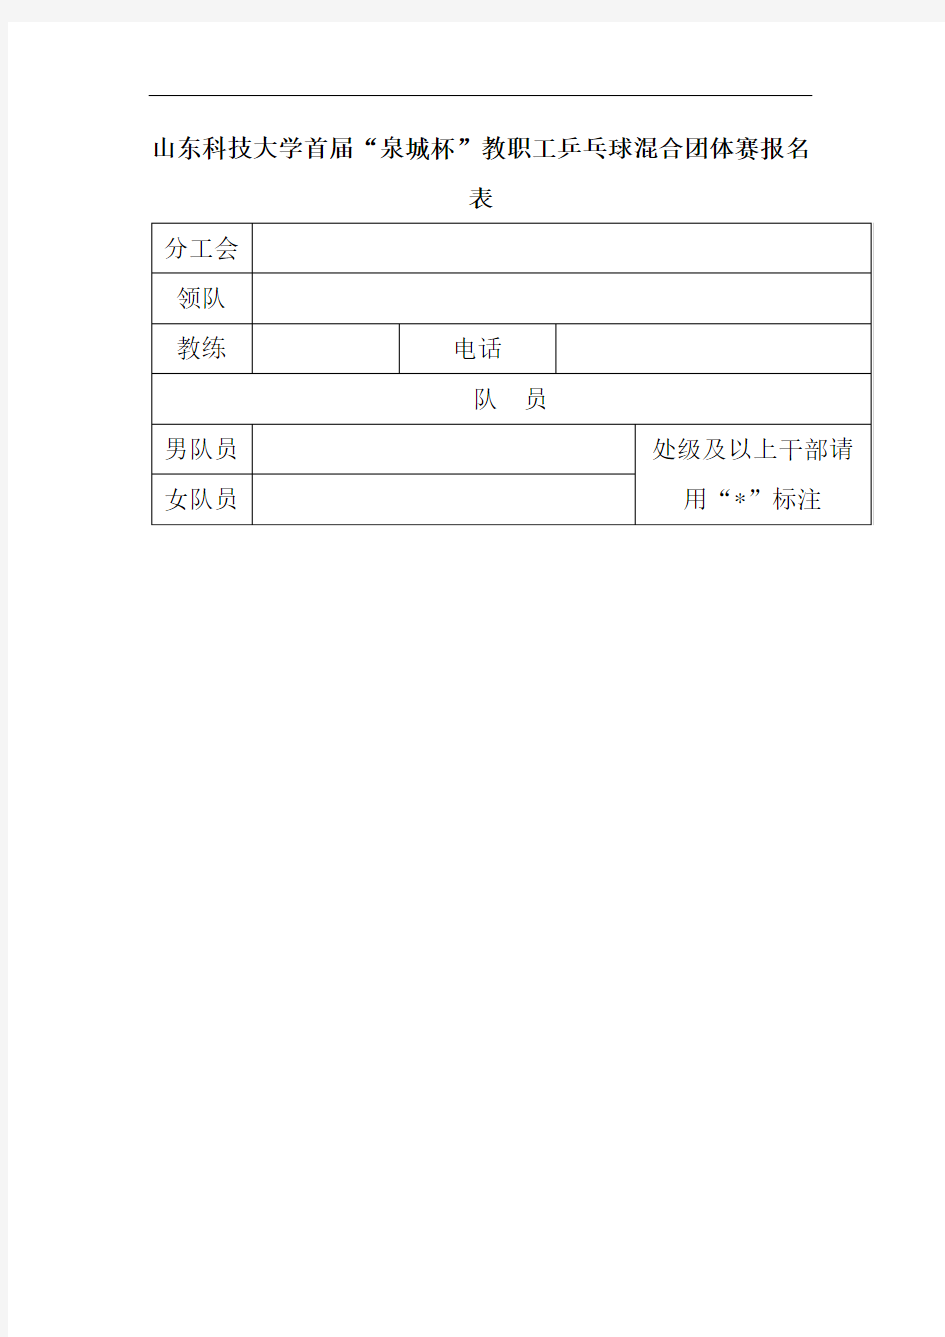 山东科技大学首届泉城杯教职工乒乓球混合团体赛报名表